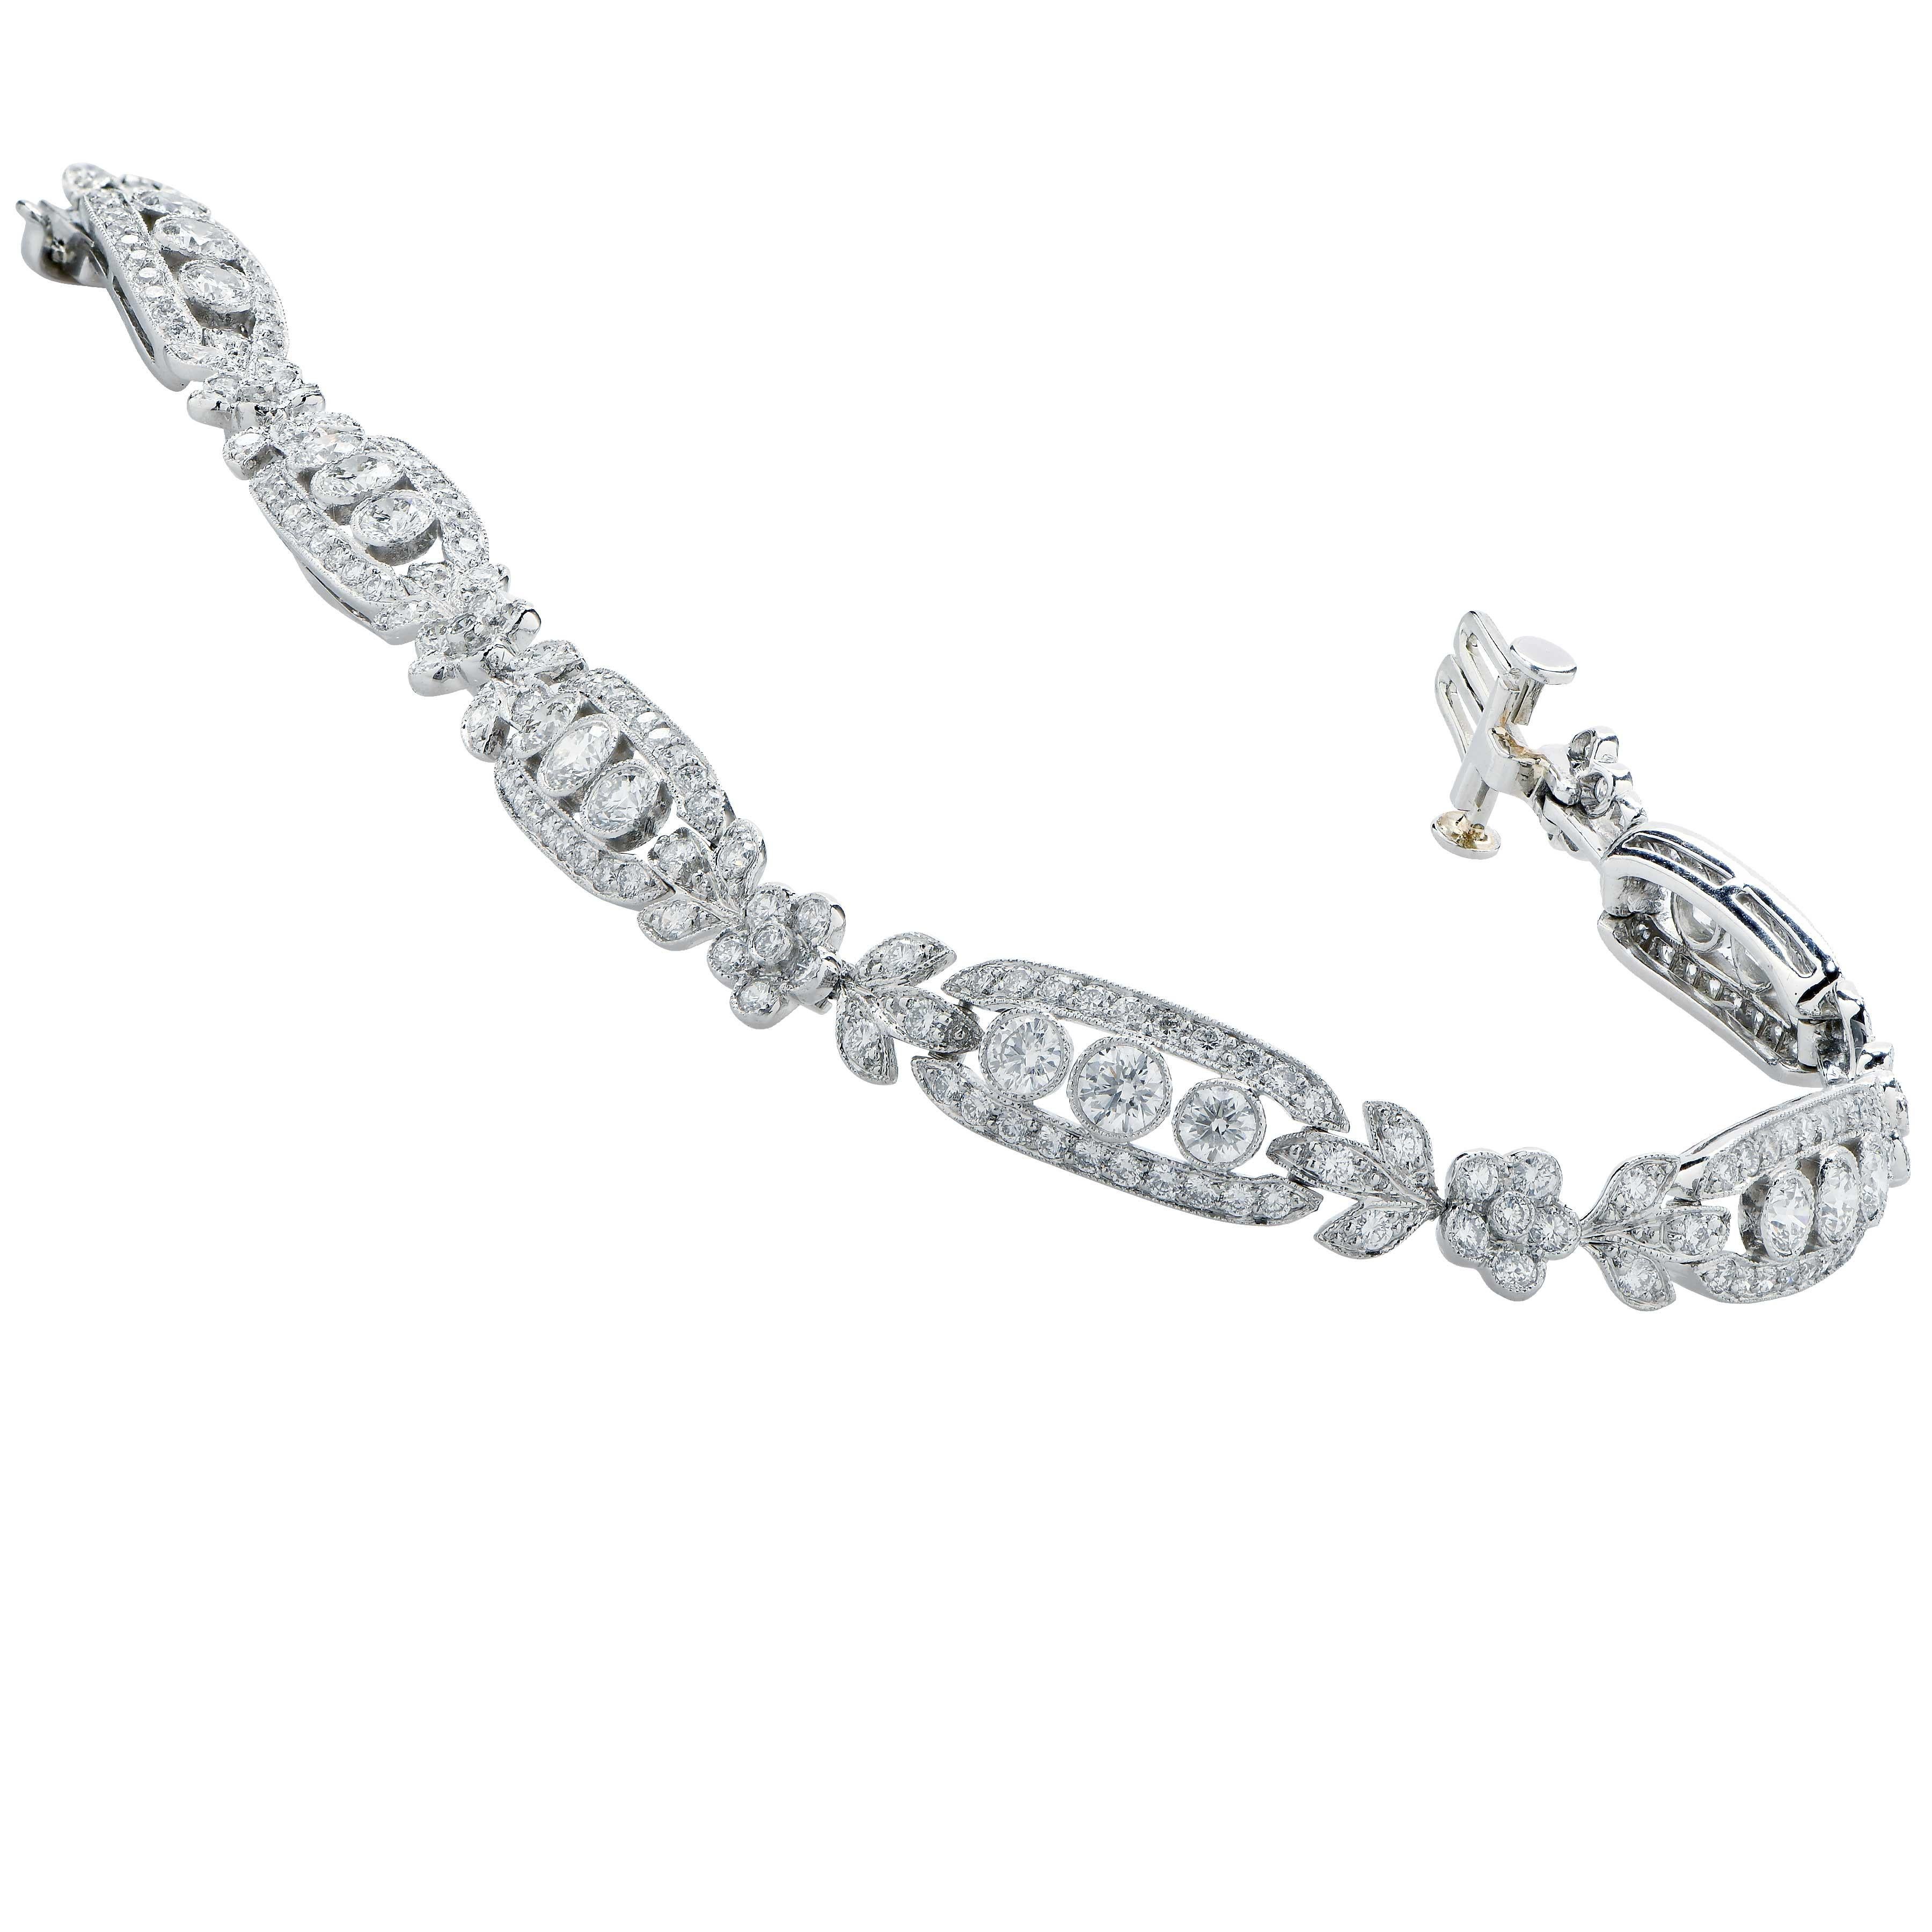 Tiffany and Company Diamantarmband in Platin.
Dieses wunderschöne Armband enthält 240 runde Diamanten im Brillantschliff mit einem geschätzten Gesamtgewicht von 4,1 Karat.
Gewicht: 20,2 Gramm